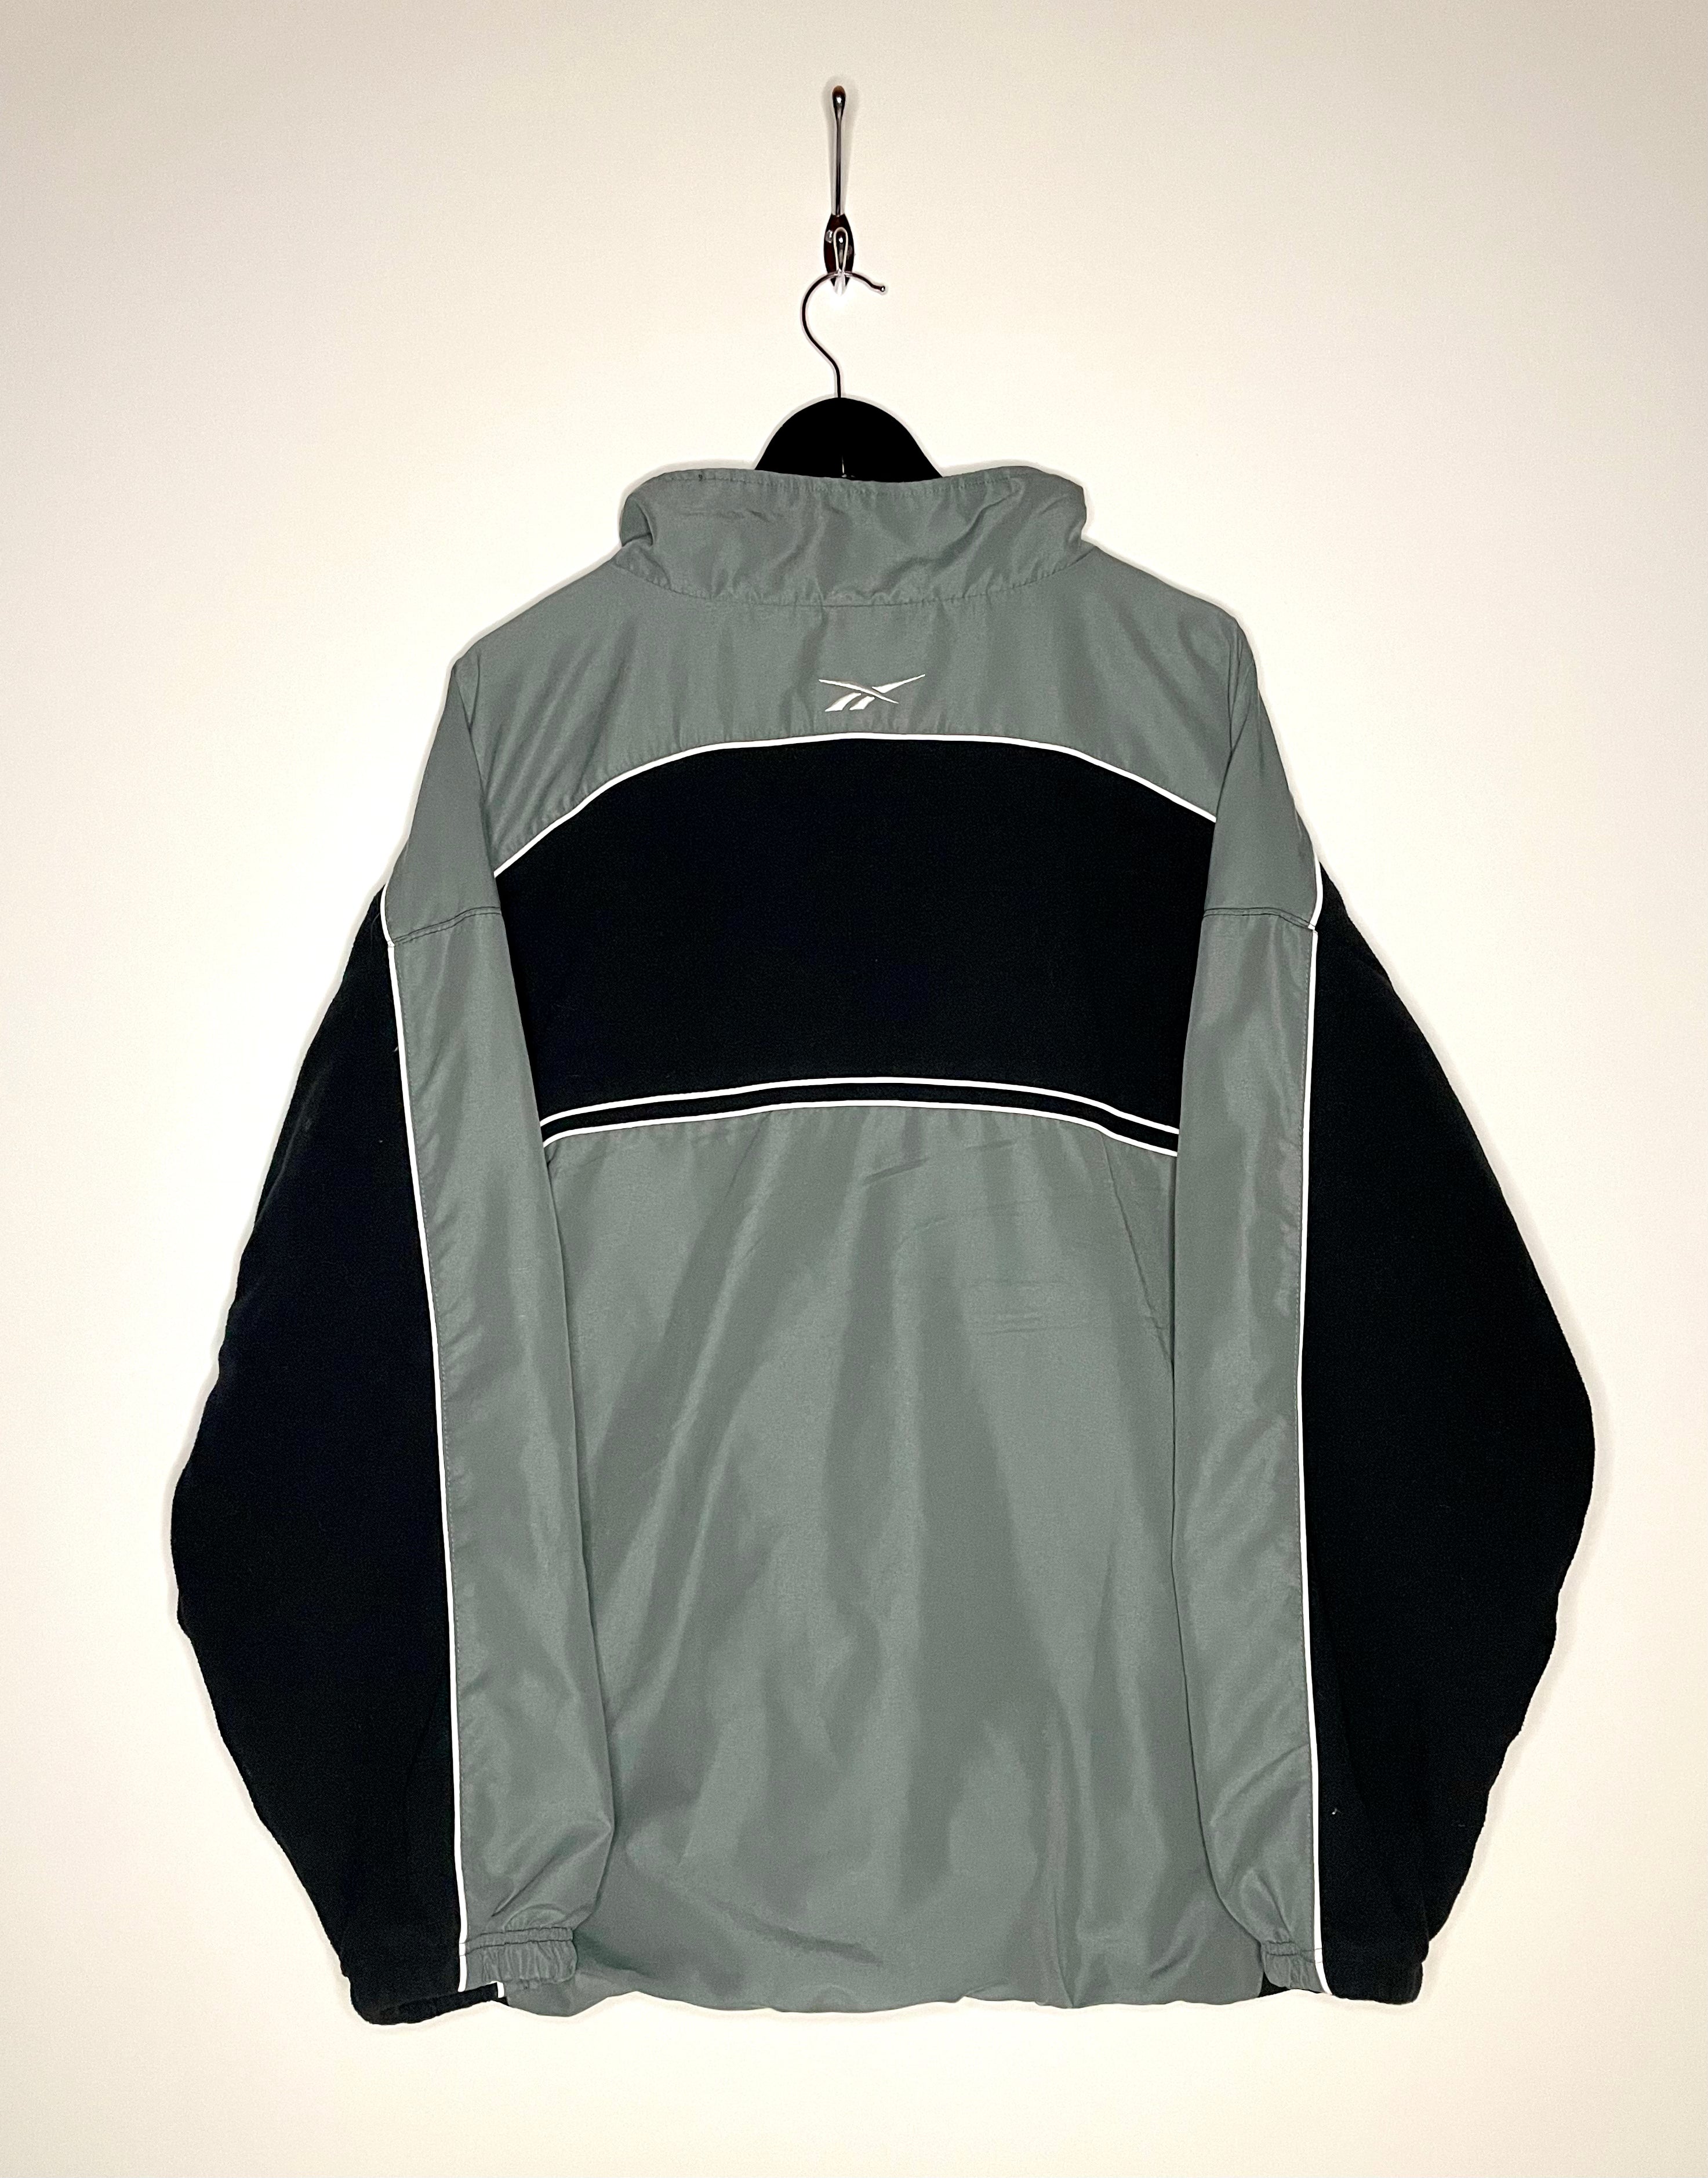 Reebok Vintage Training Jacket Fleece Grey/Black Size XXL